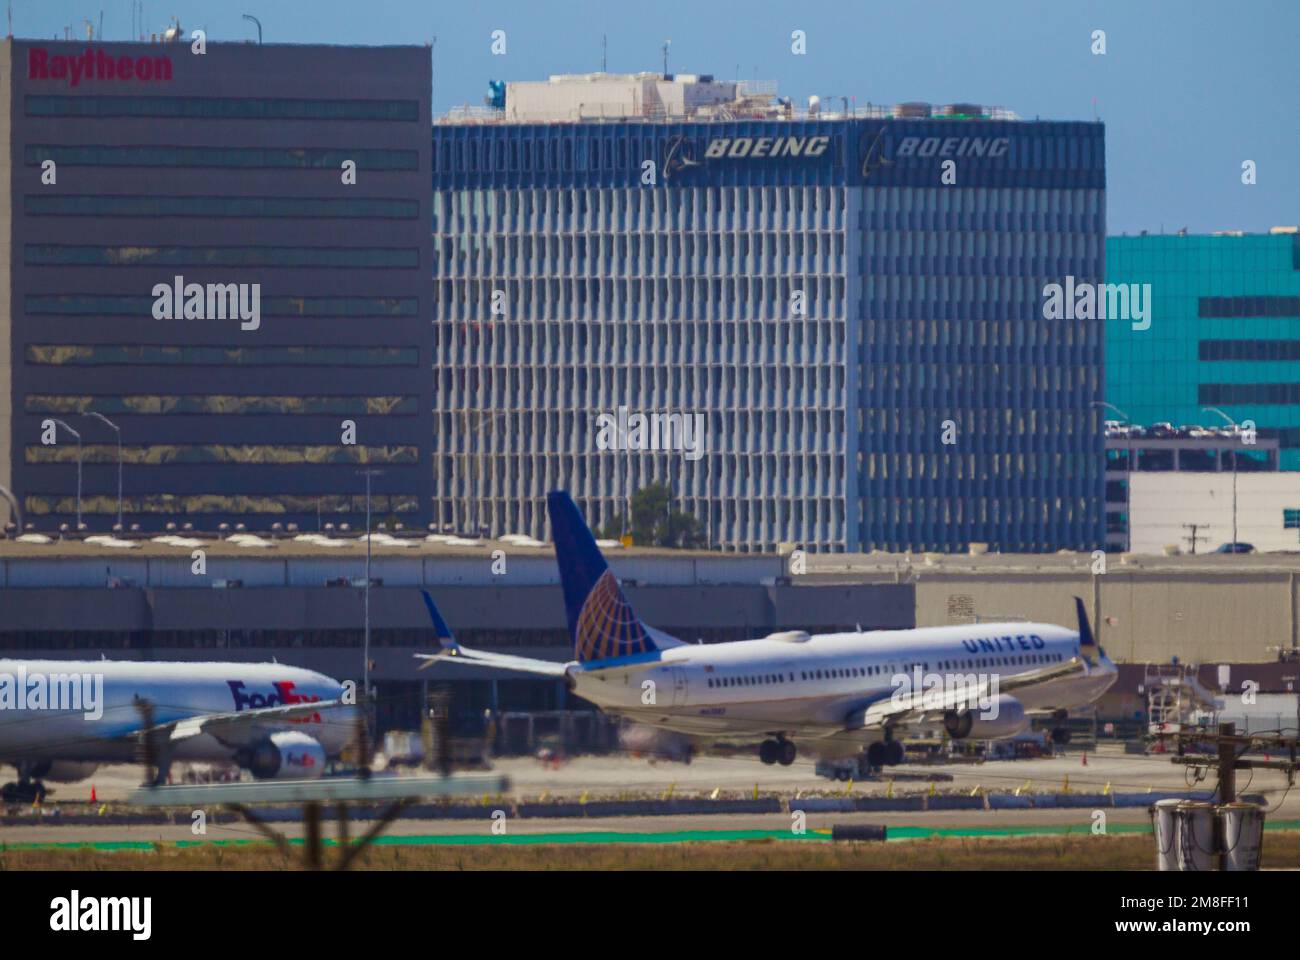 Detail vom Flughafen LAX in Los Angeles, Kalifornien, USA. Abbildung: FedEx- und United Airlines-Jets am LAX, mit Boeing- und Raytheon-Hauptsitz im Hintergrund. Stockfoto